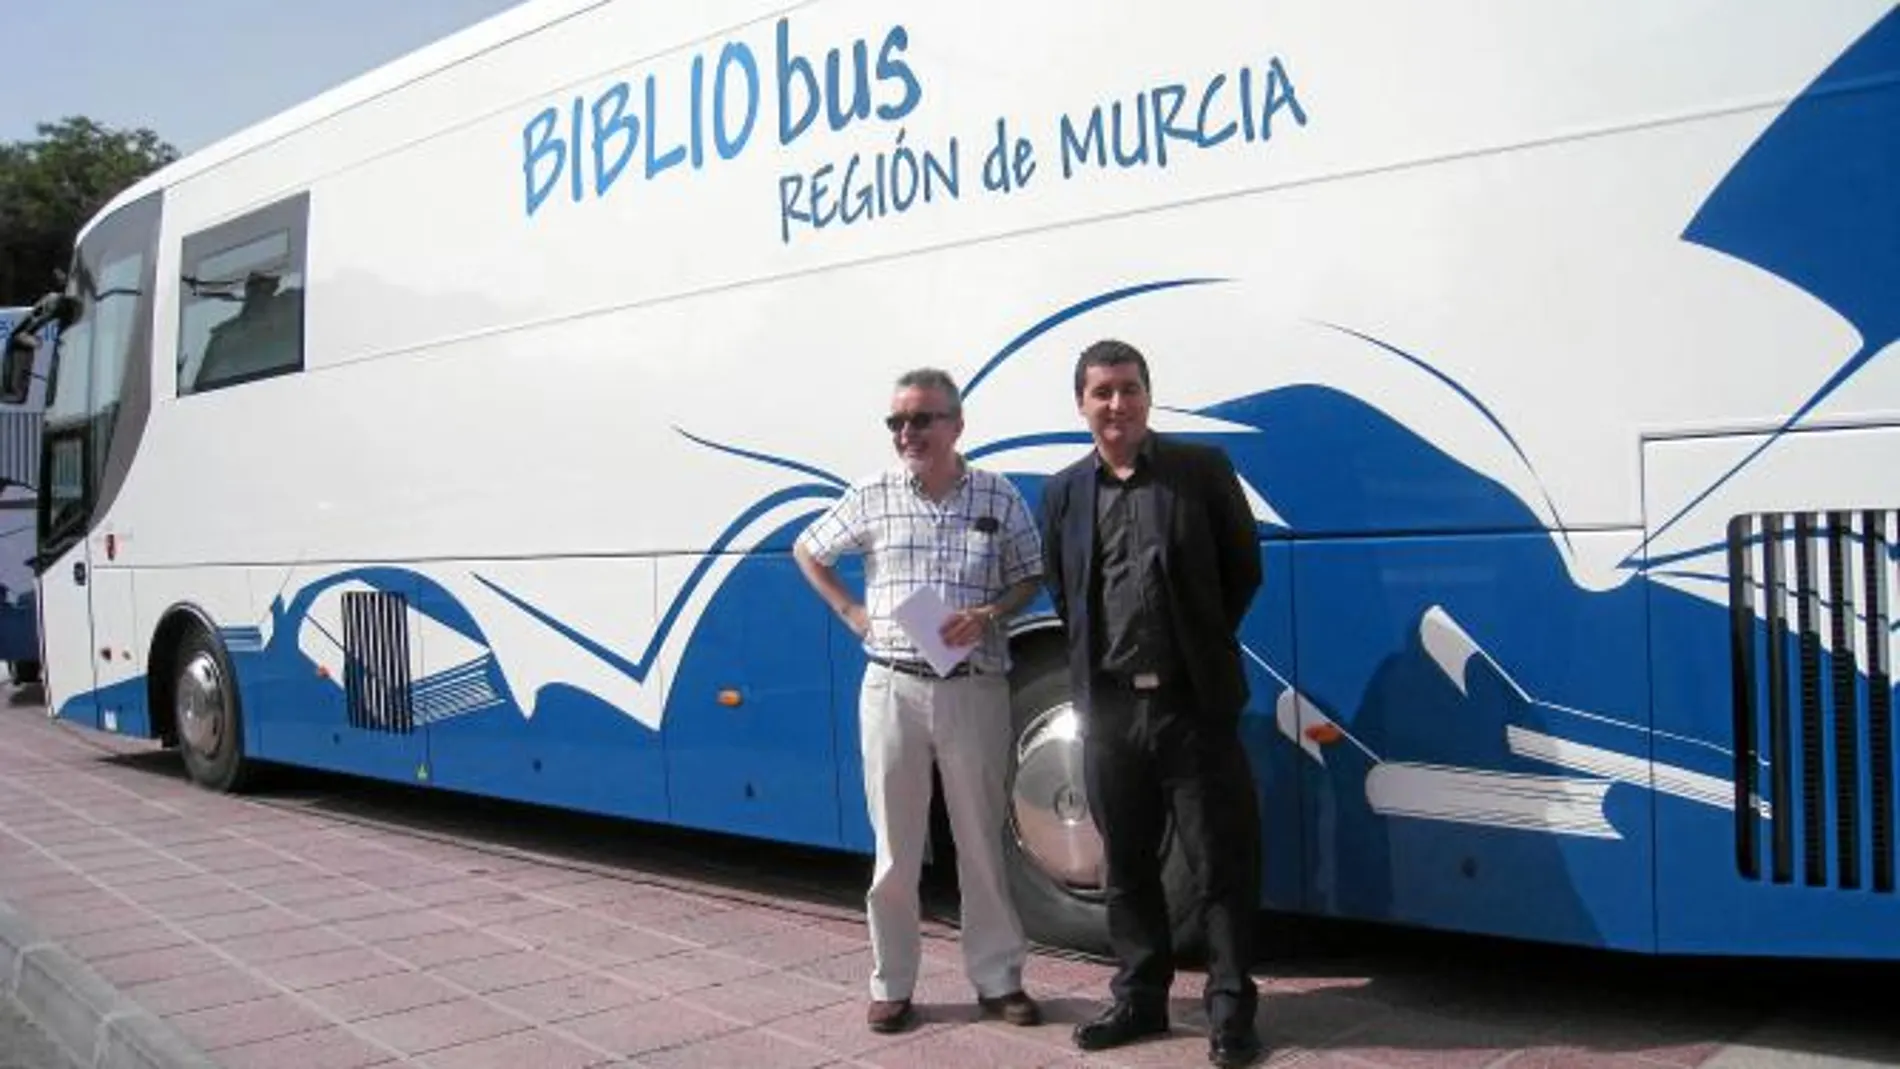 El bibliobús llevará más de 60000 libros a cinco municipios de la costa de la Región